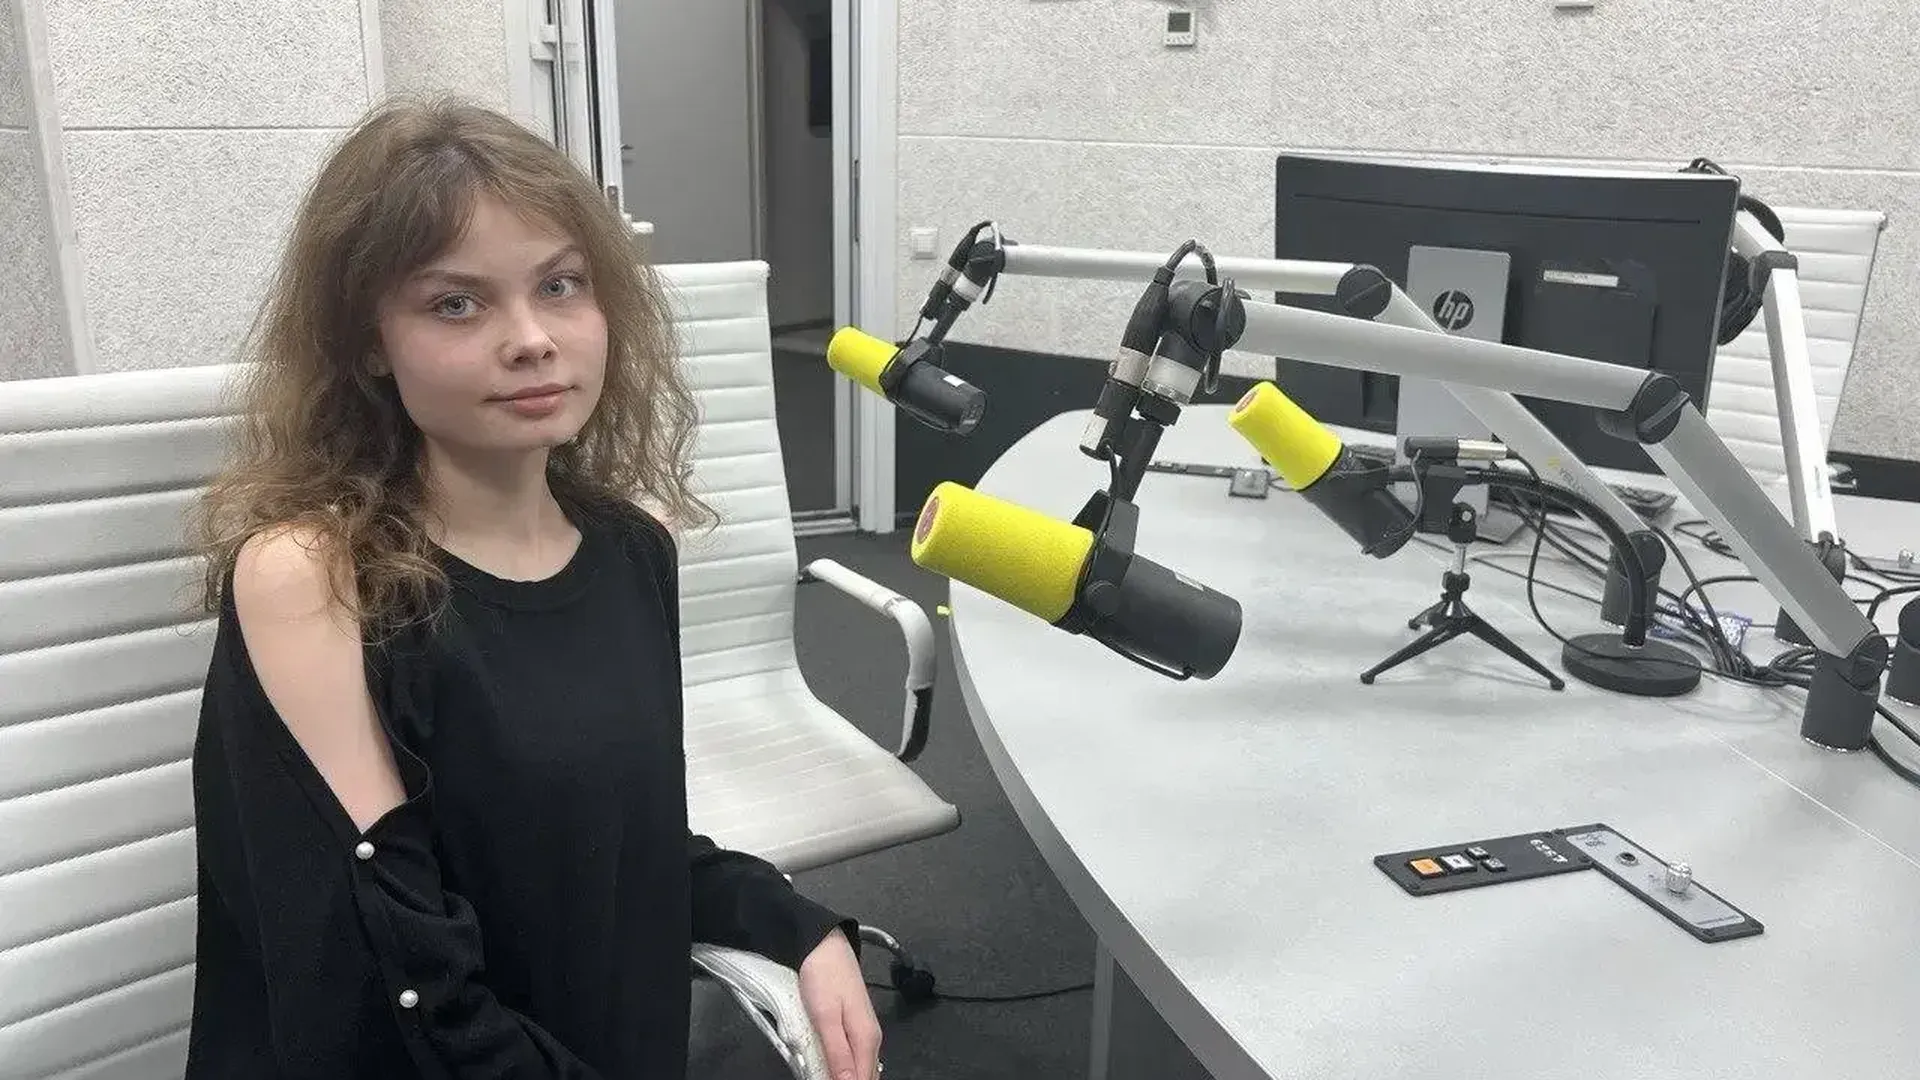 Студентка из Раменского округа рассказала о своем бизнес-проекте в эфире радио